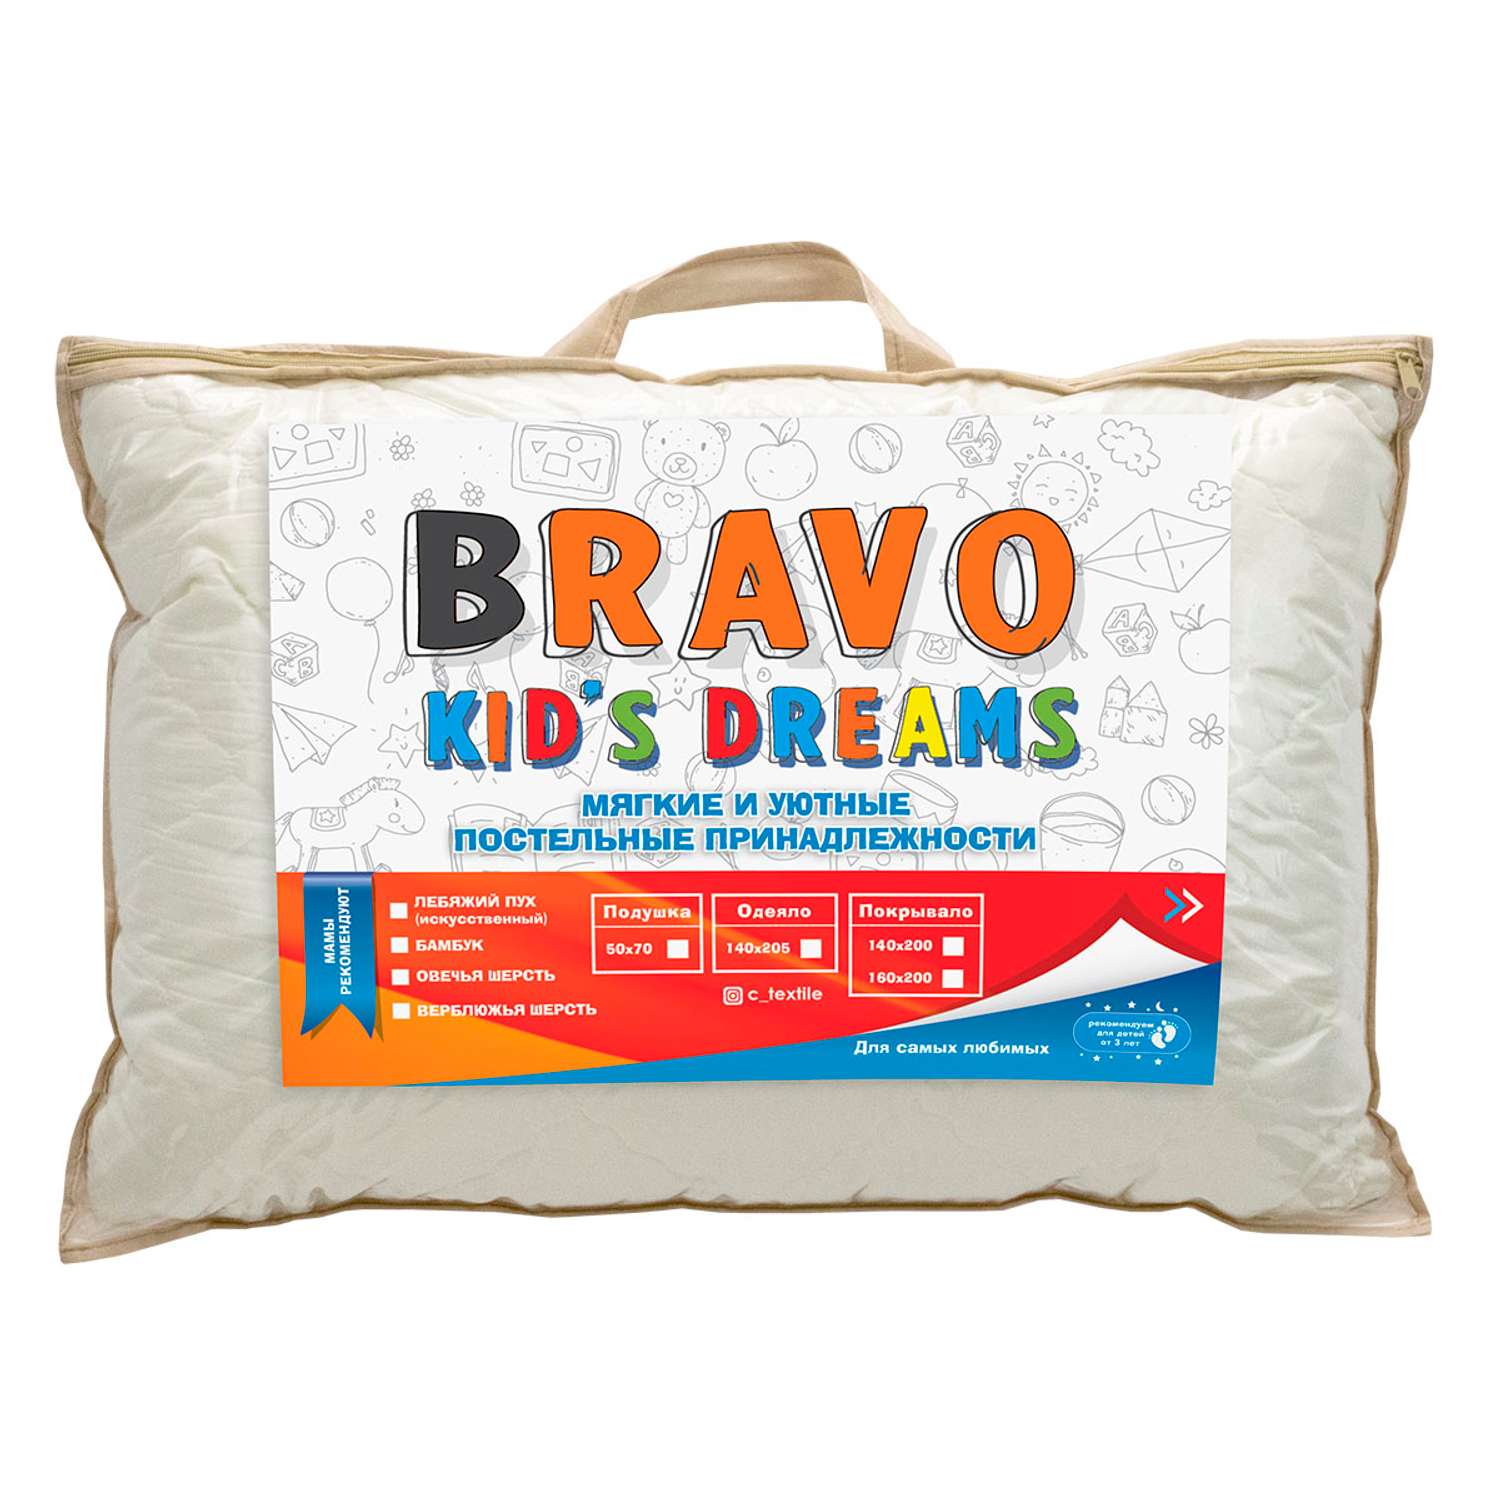 Подушка BRAVO kids dreams Филлфайбер 50х70 - фото 5